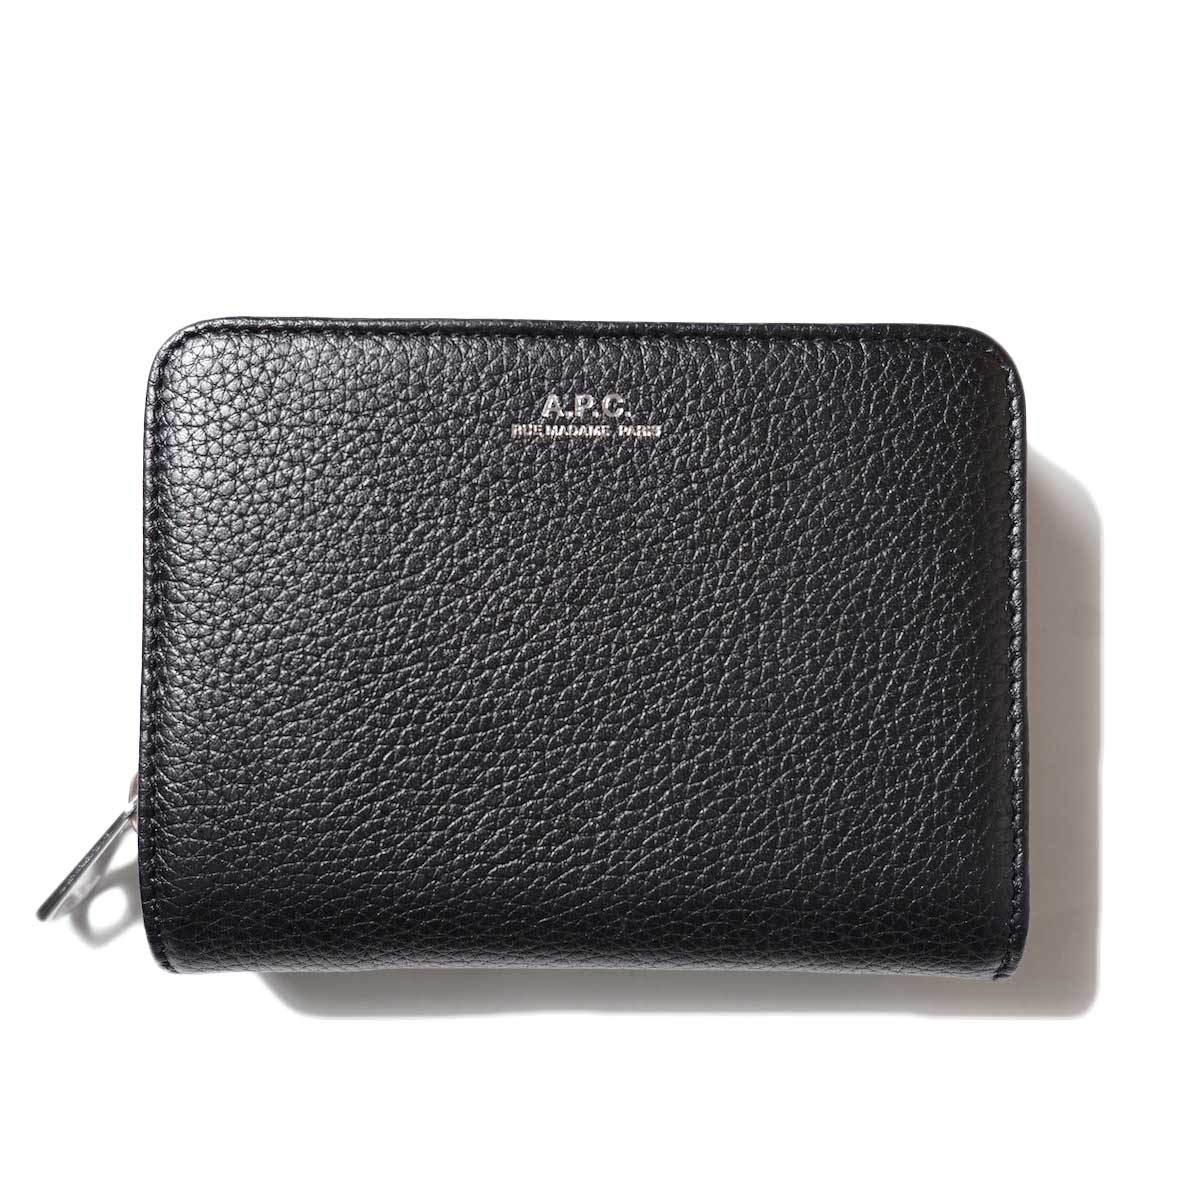 A.P.C. / Emmanuel Compact Wallet (Grain leather・Black)